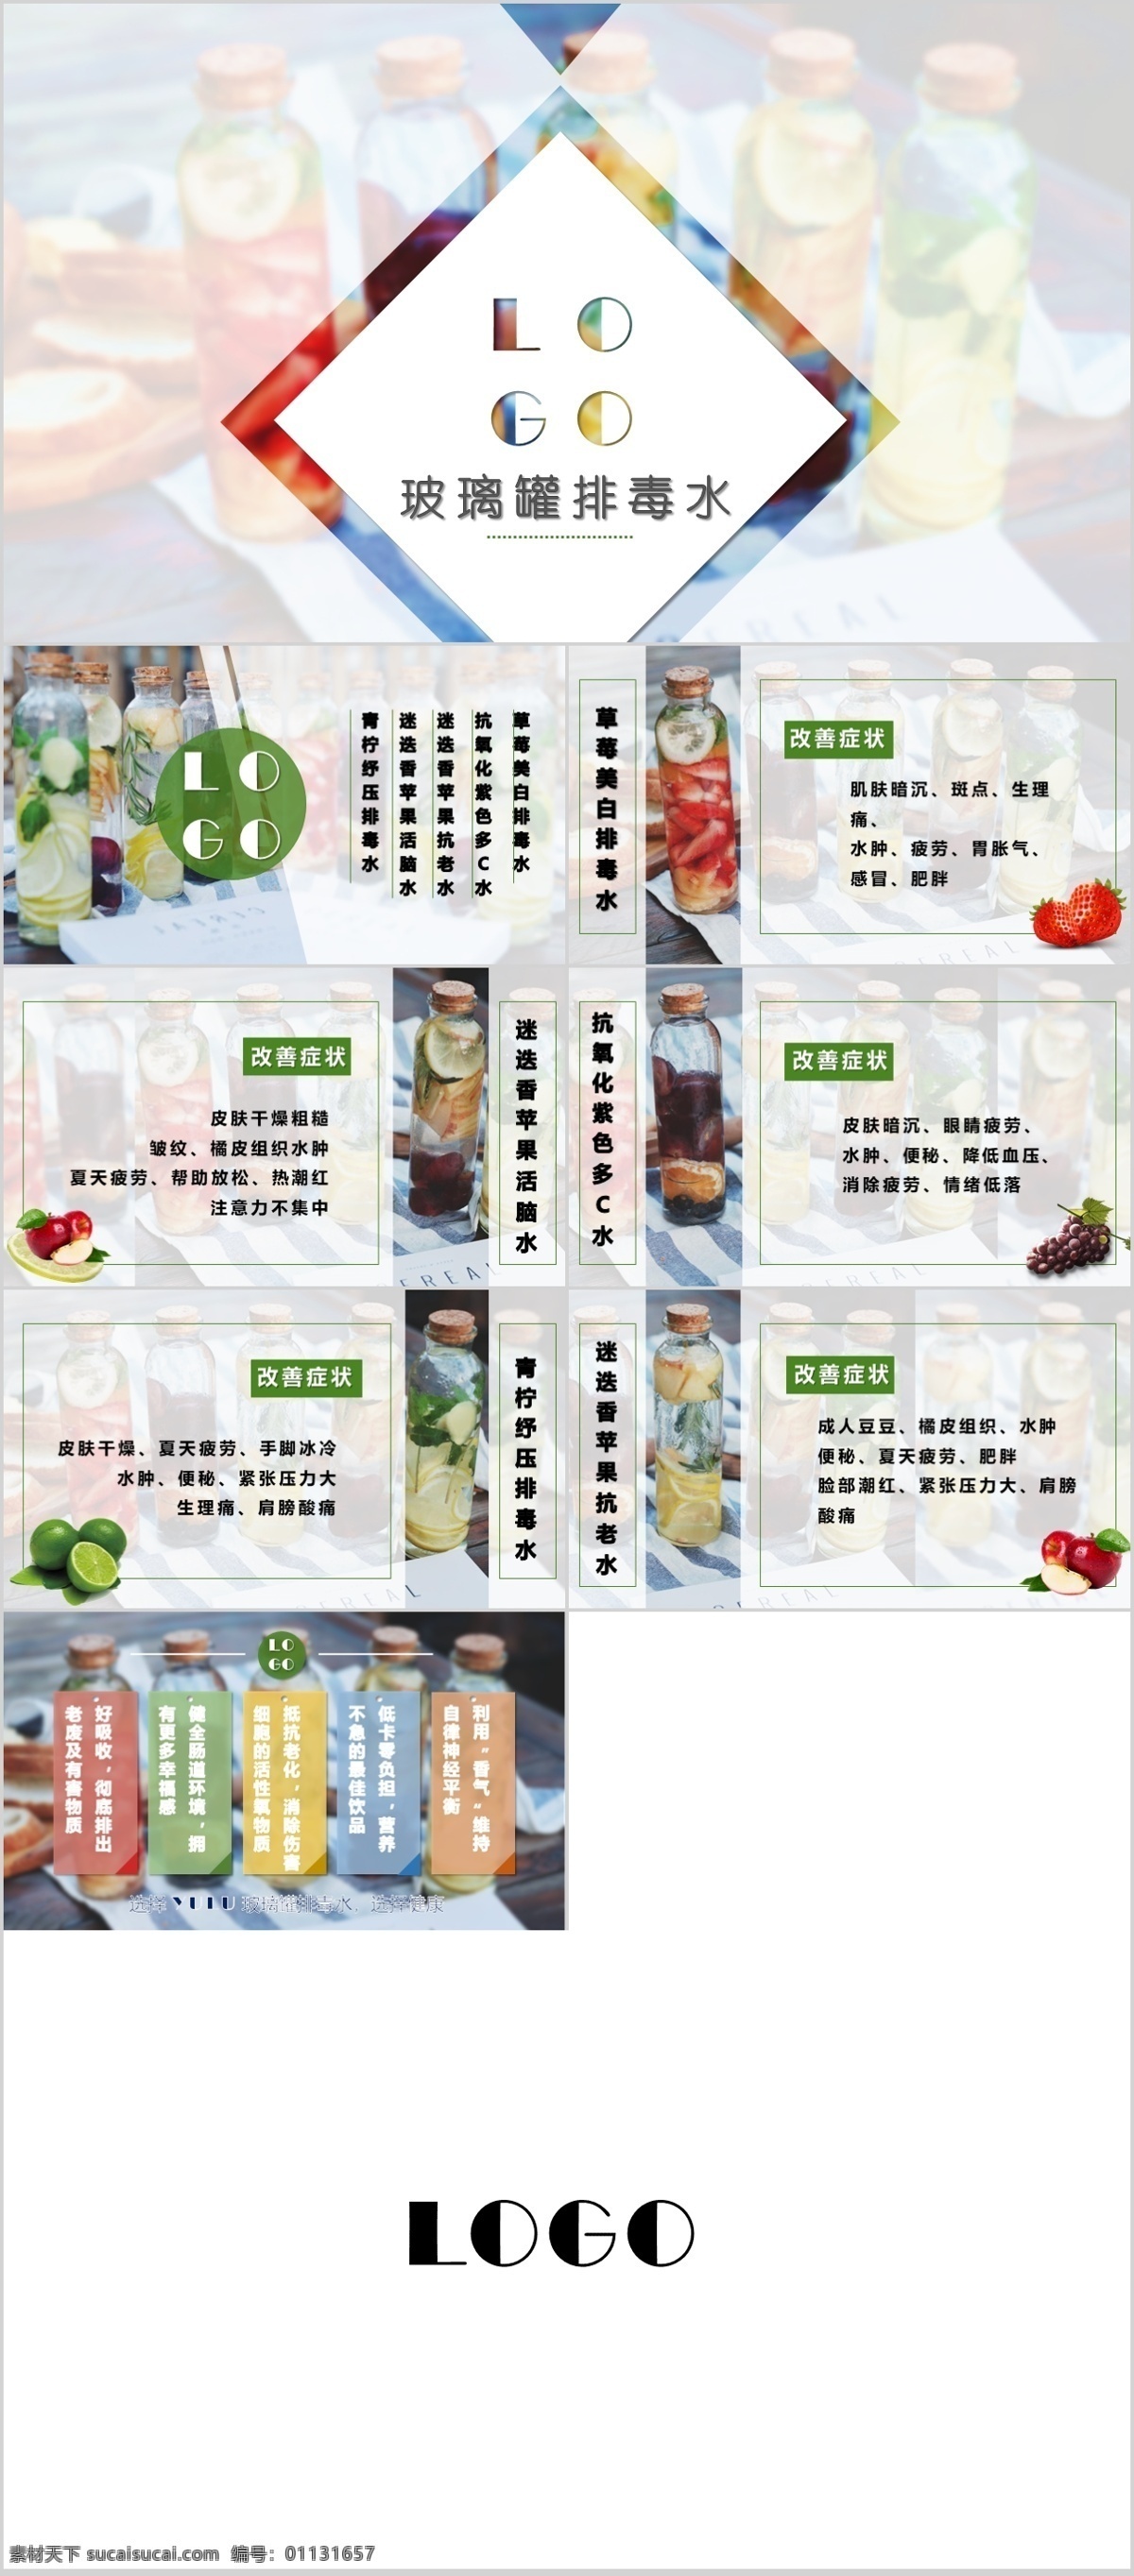 美食 饮品 模板 ppt模板 餐饮宣传 微信长图 ppt排版